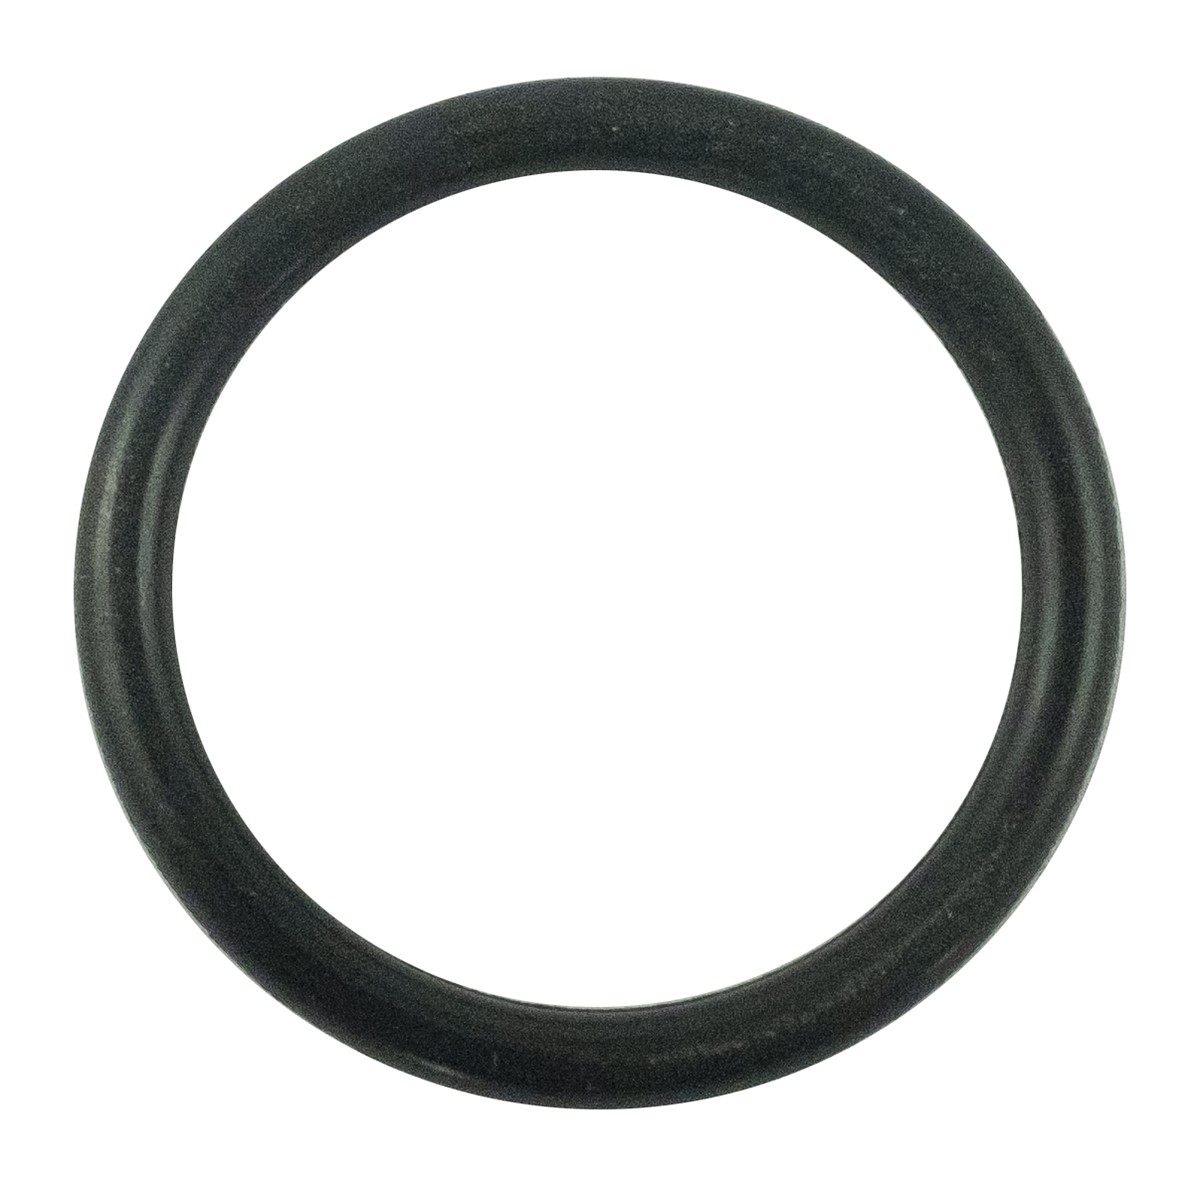 O-ring 20.80 x 2.40 mm / LS MT1.25 / LS MT3.35 / LS MT3.50 / S801021010 / 40029208